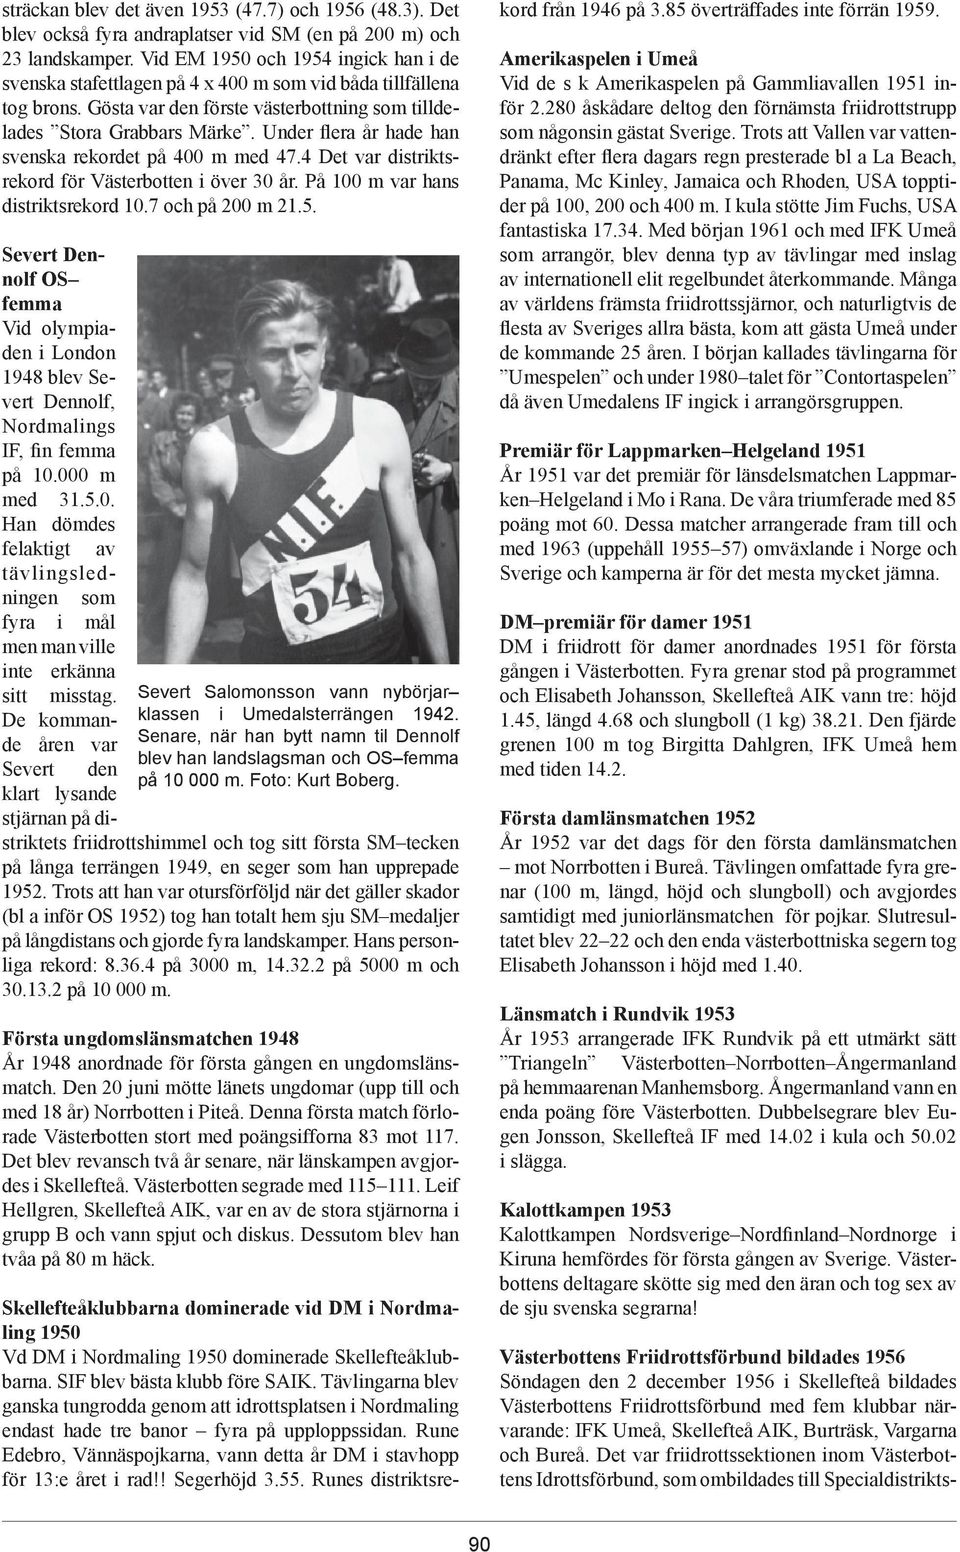 Under flera år hade han svenska rekordet på 400 m med 47.4 Det var distriktsrekord för Västerbotten i över 30 år. På 100 m var hans distriktsrekord 10.7 och på 200 m 21.5.